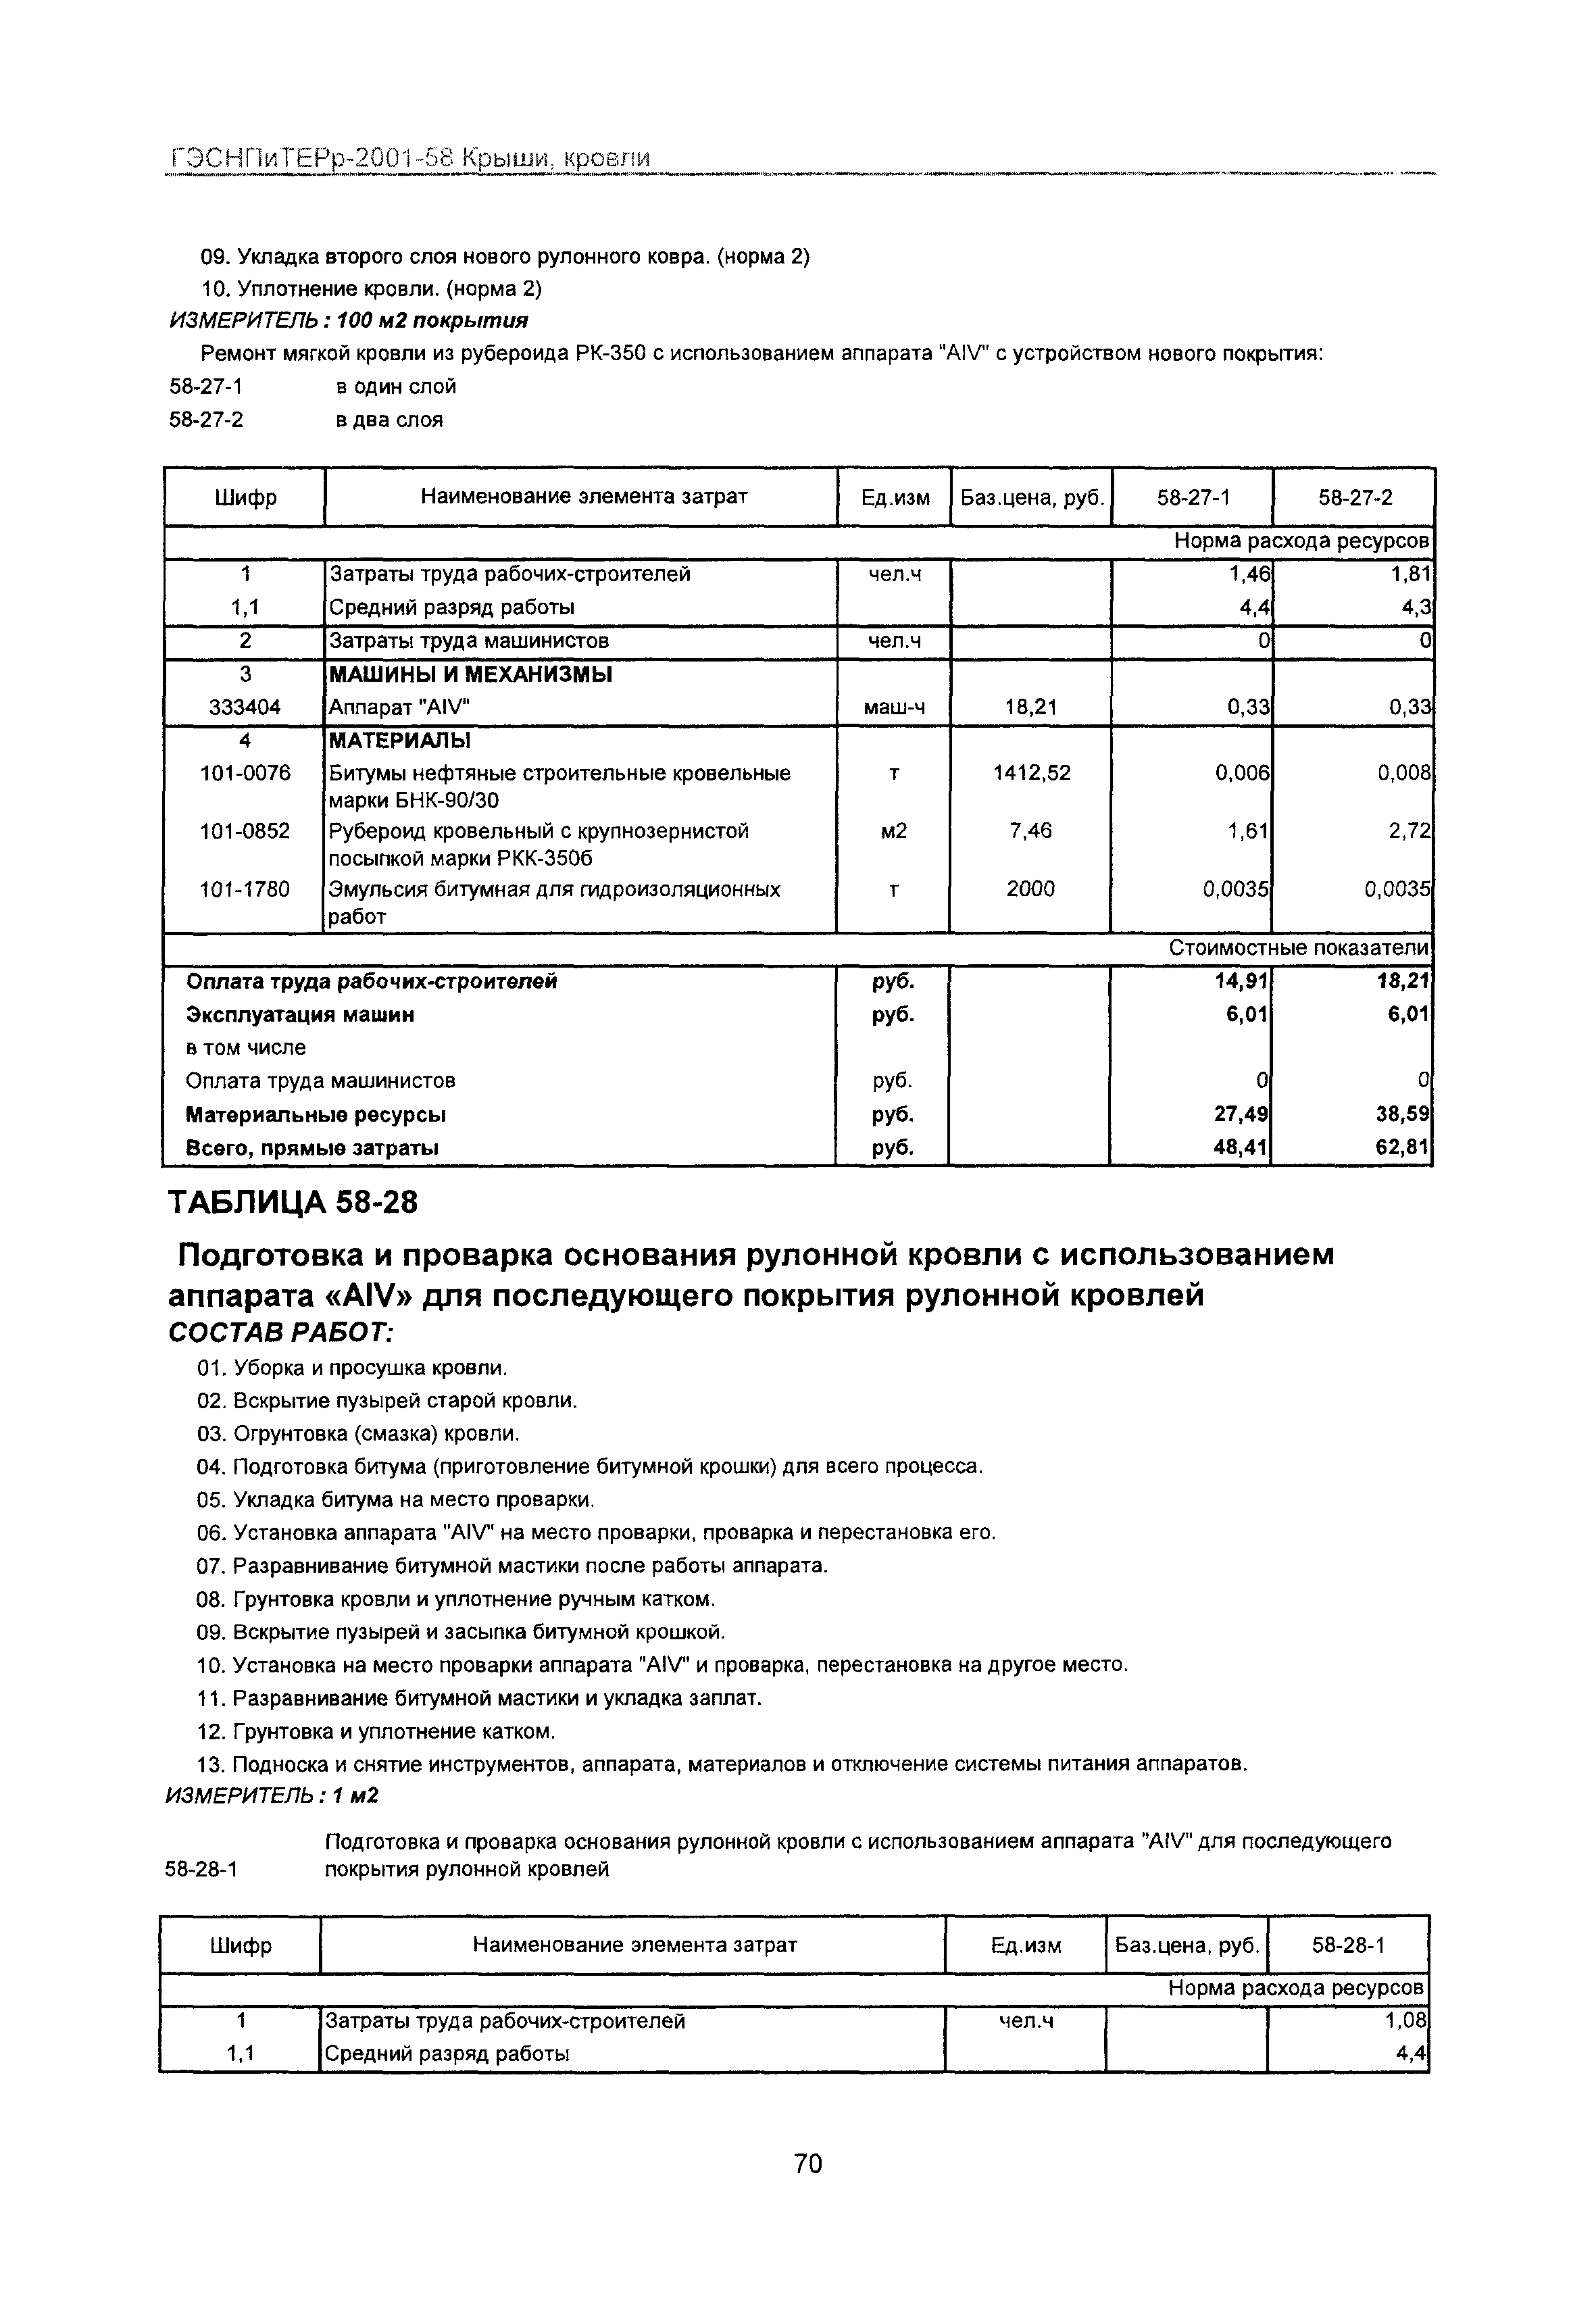 ГЭСНПиТЕРр 2001-58 Московской области